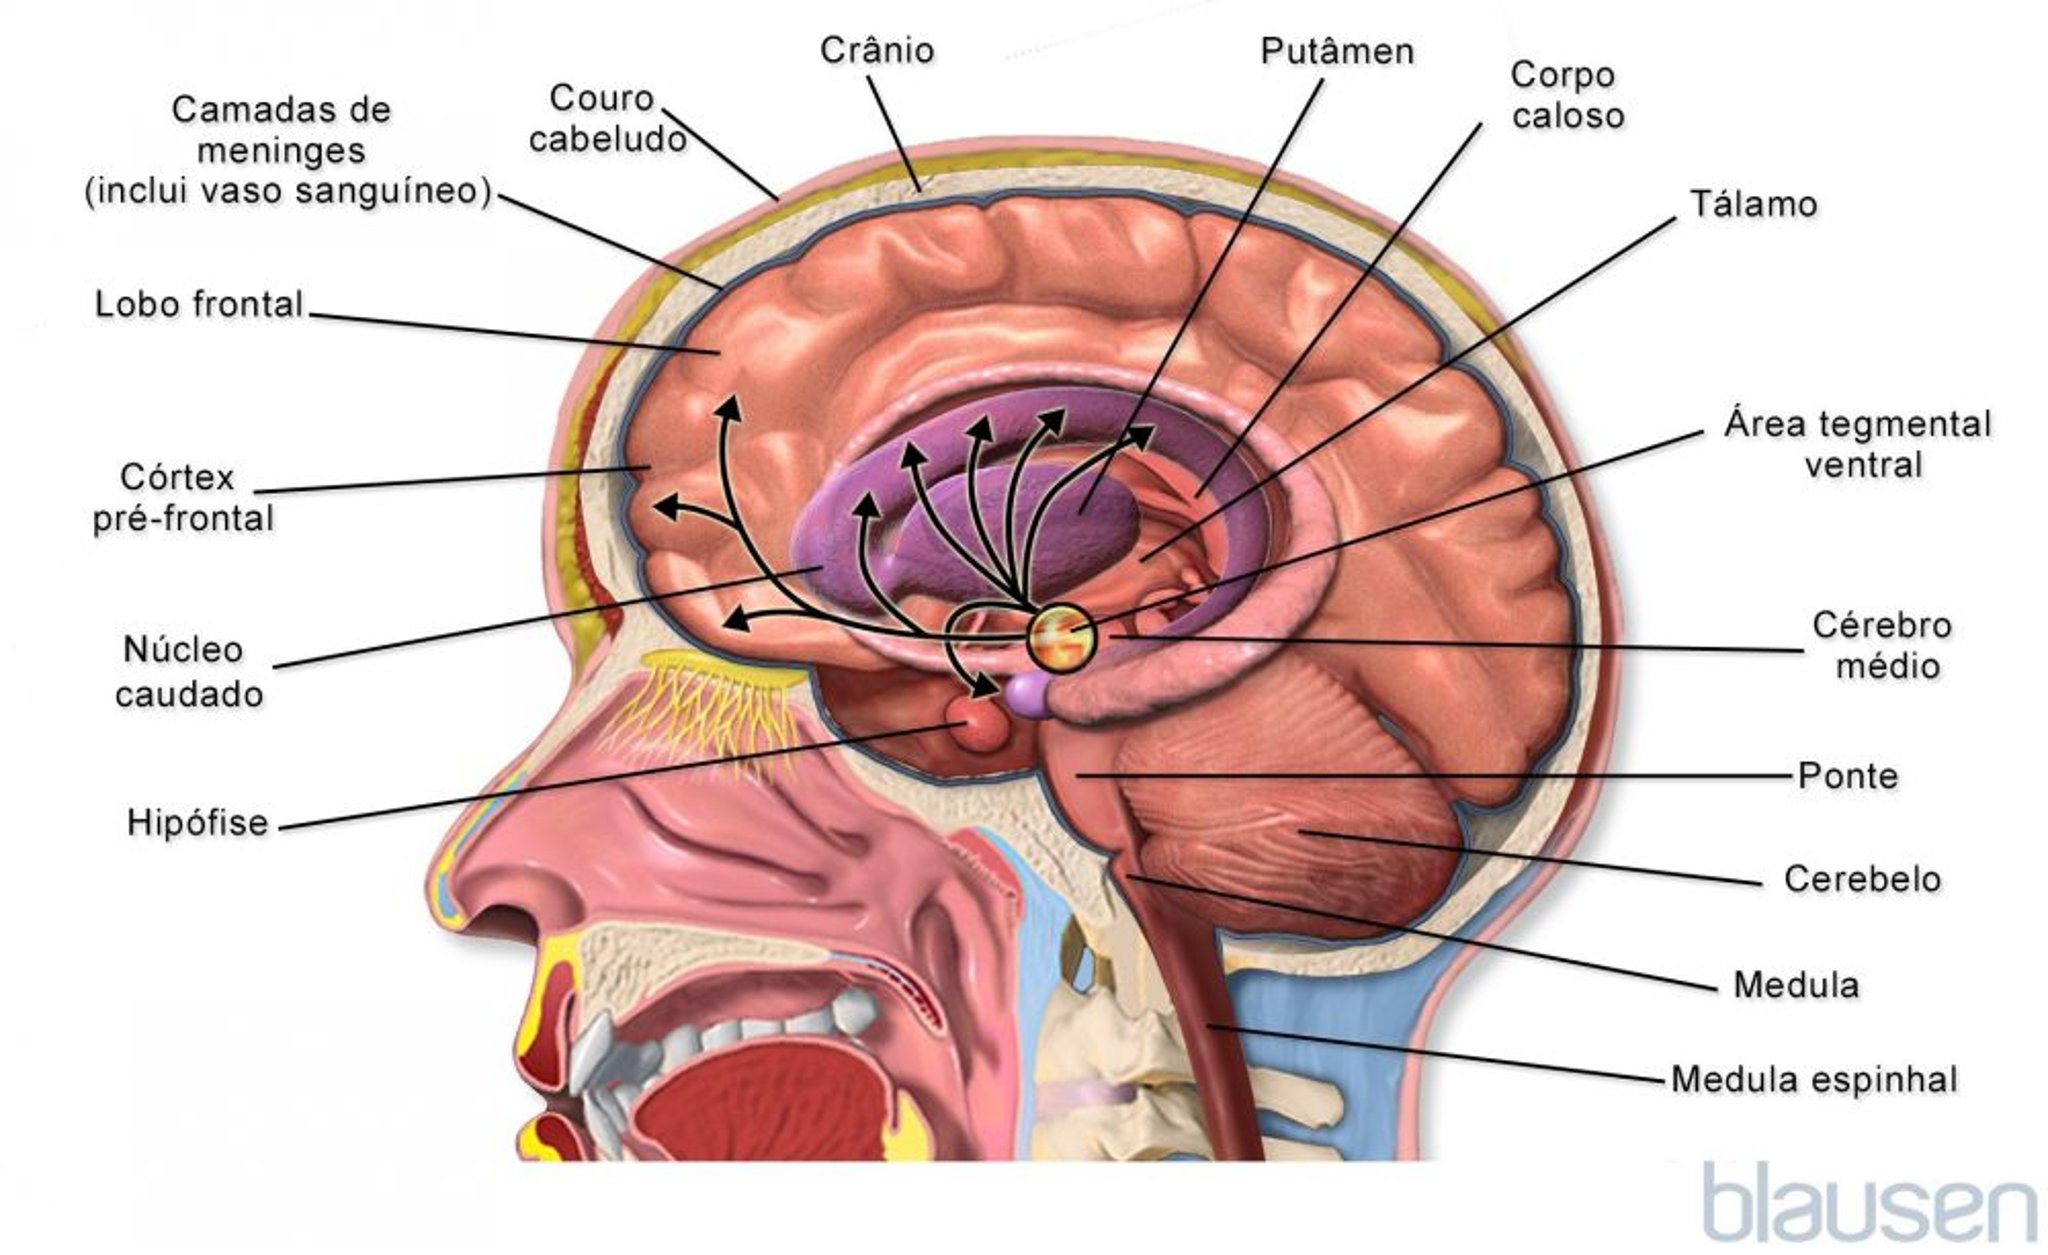 Dentro do cérebro (meduloblastoma)